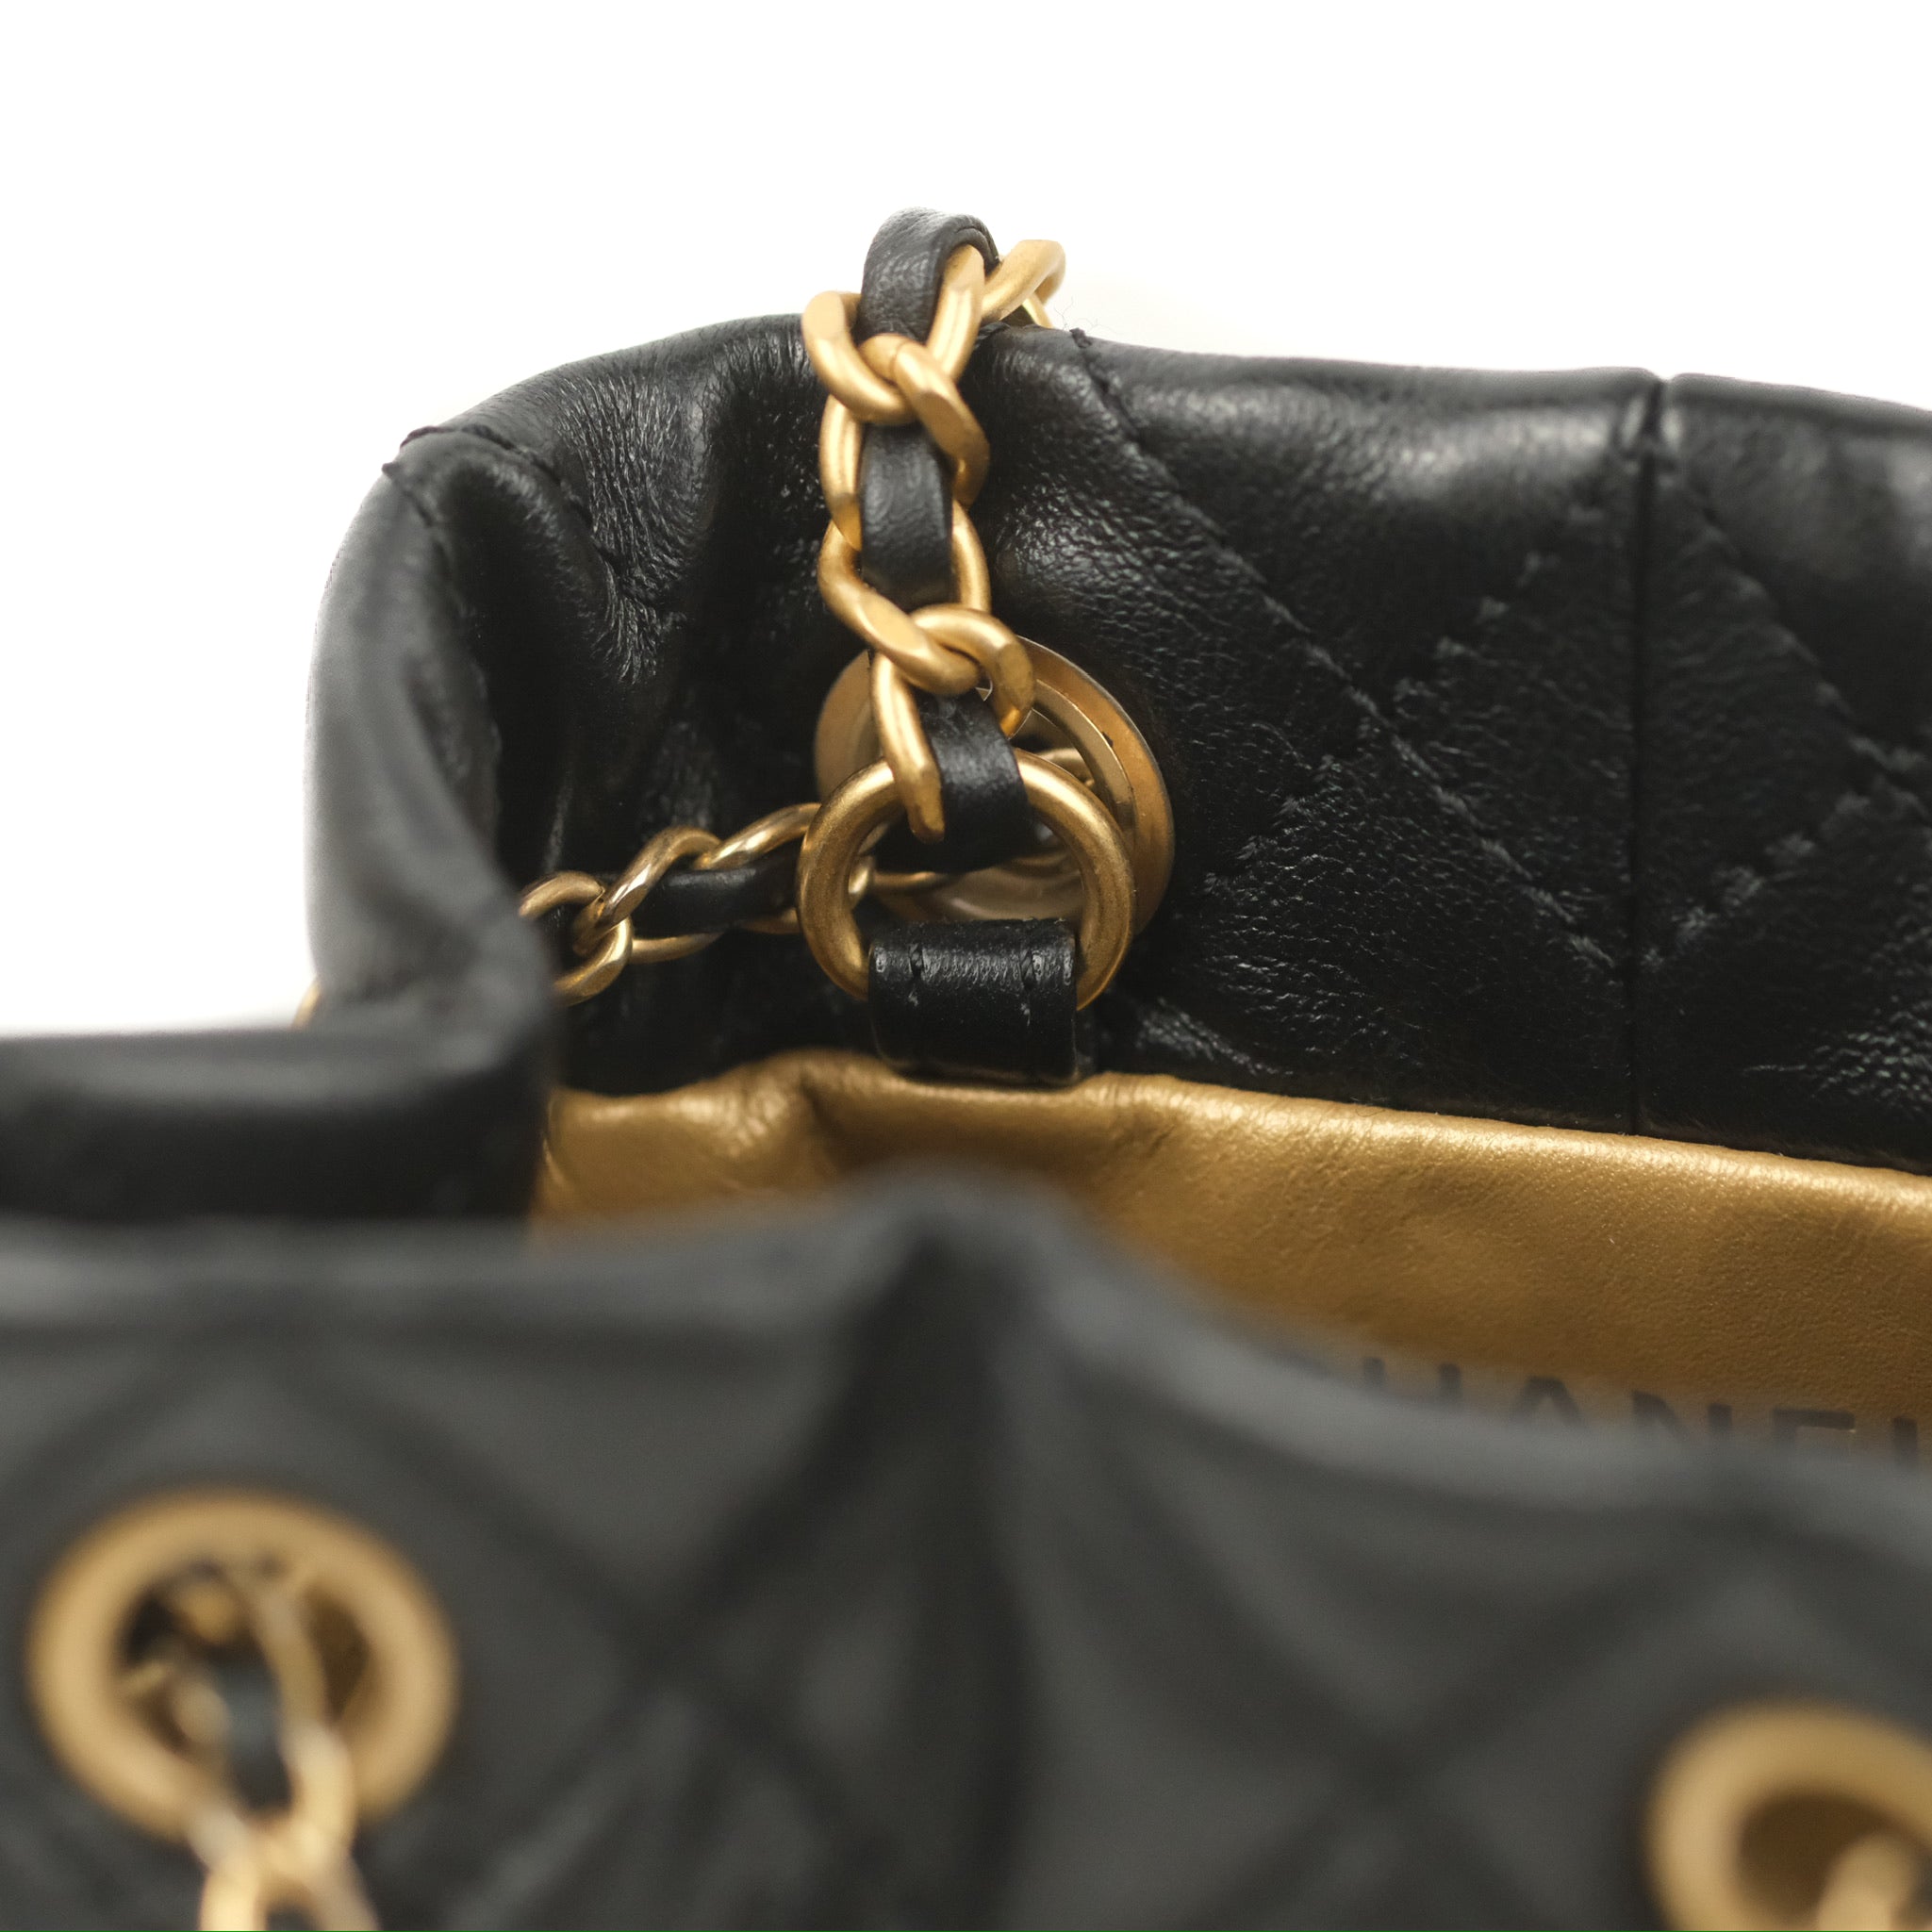 CHANEL, Bags, Chanel Pearl Bucket Bag Backpack Bag Crossbody Bag Handbag  Metal Chain Bag